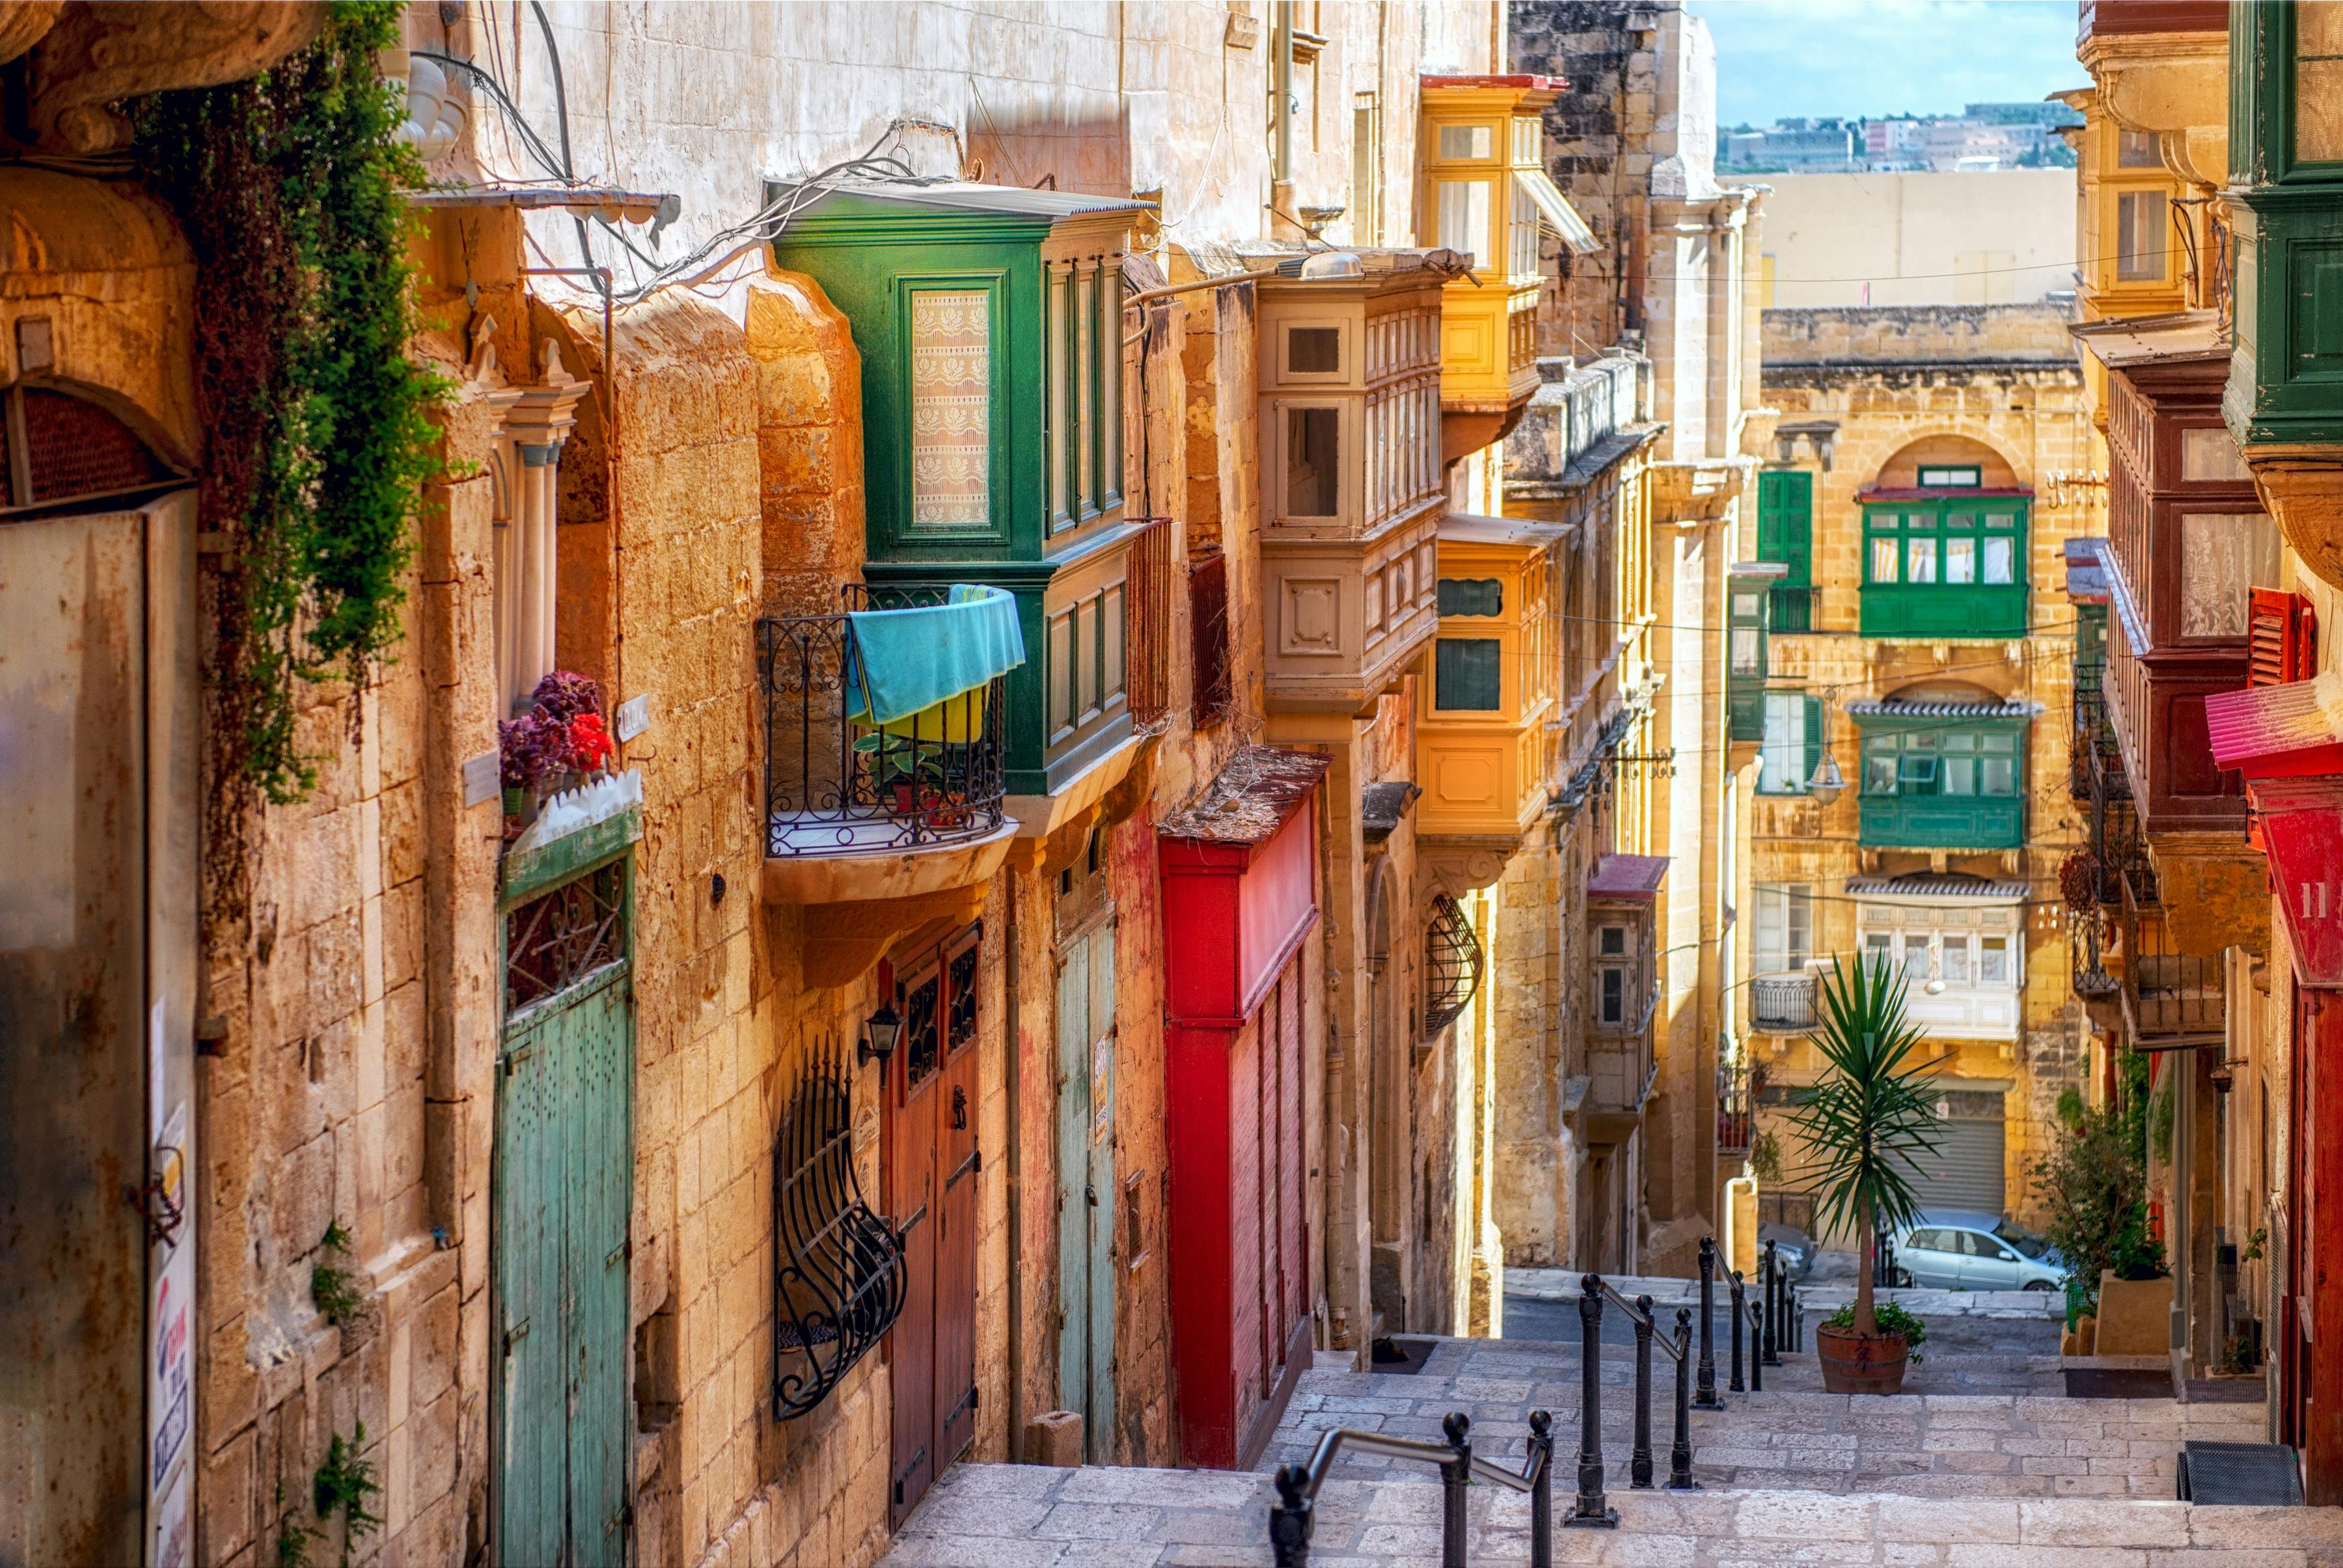 Wycieczka piesza po ulicy i kulturze w Valletcie